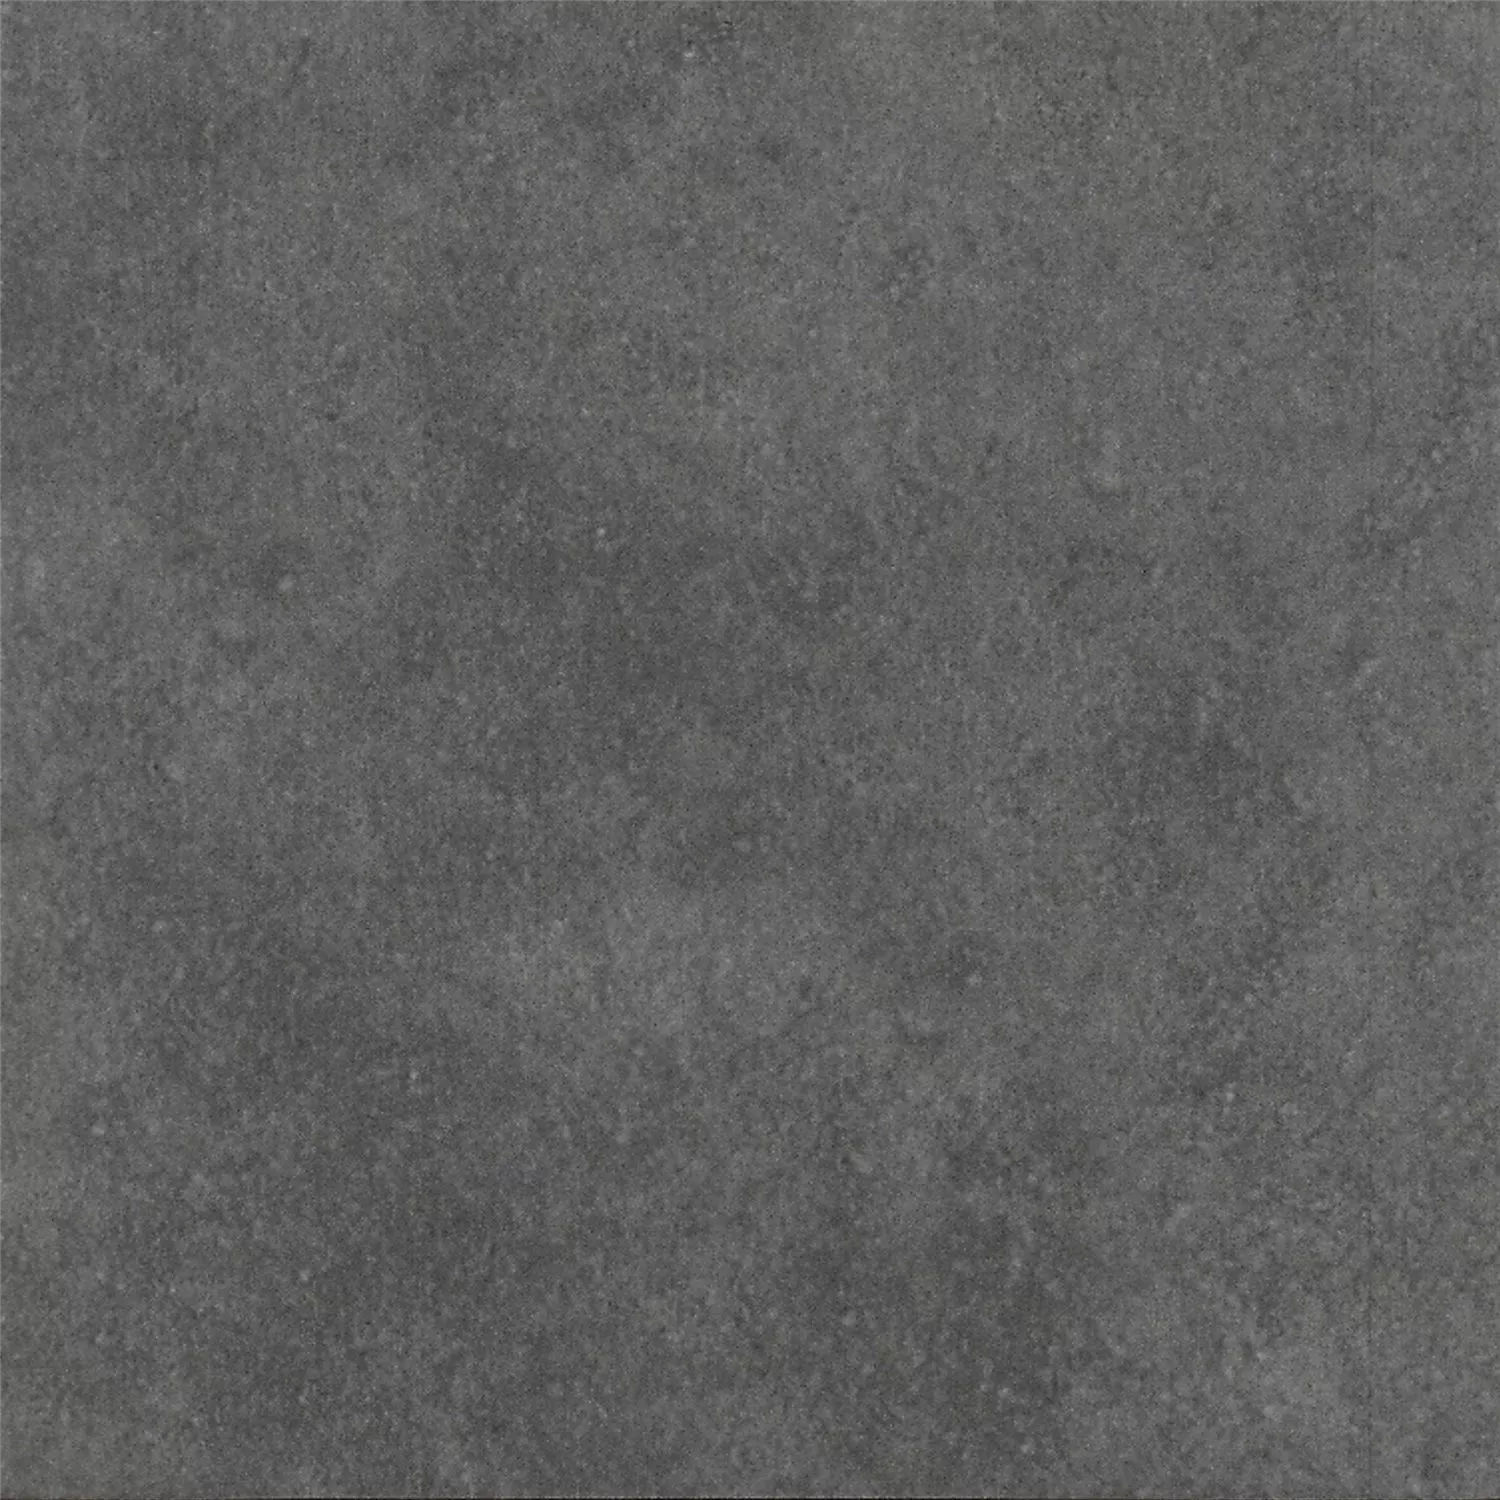 Sample Cement Tiles Optic Gotik Basic Tile Dark Grey 22,3x22,3cm